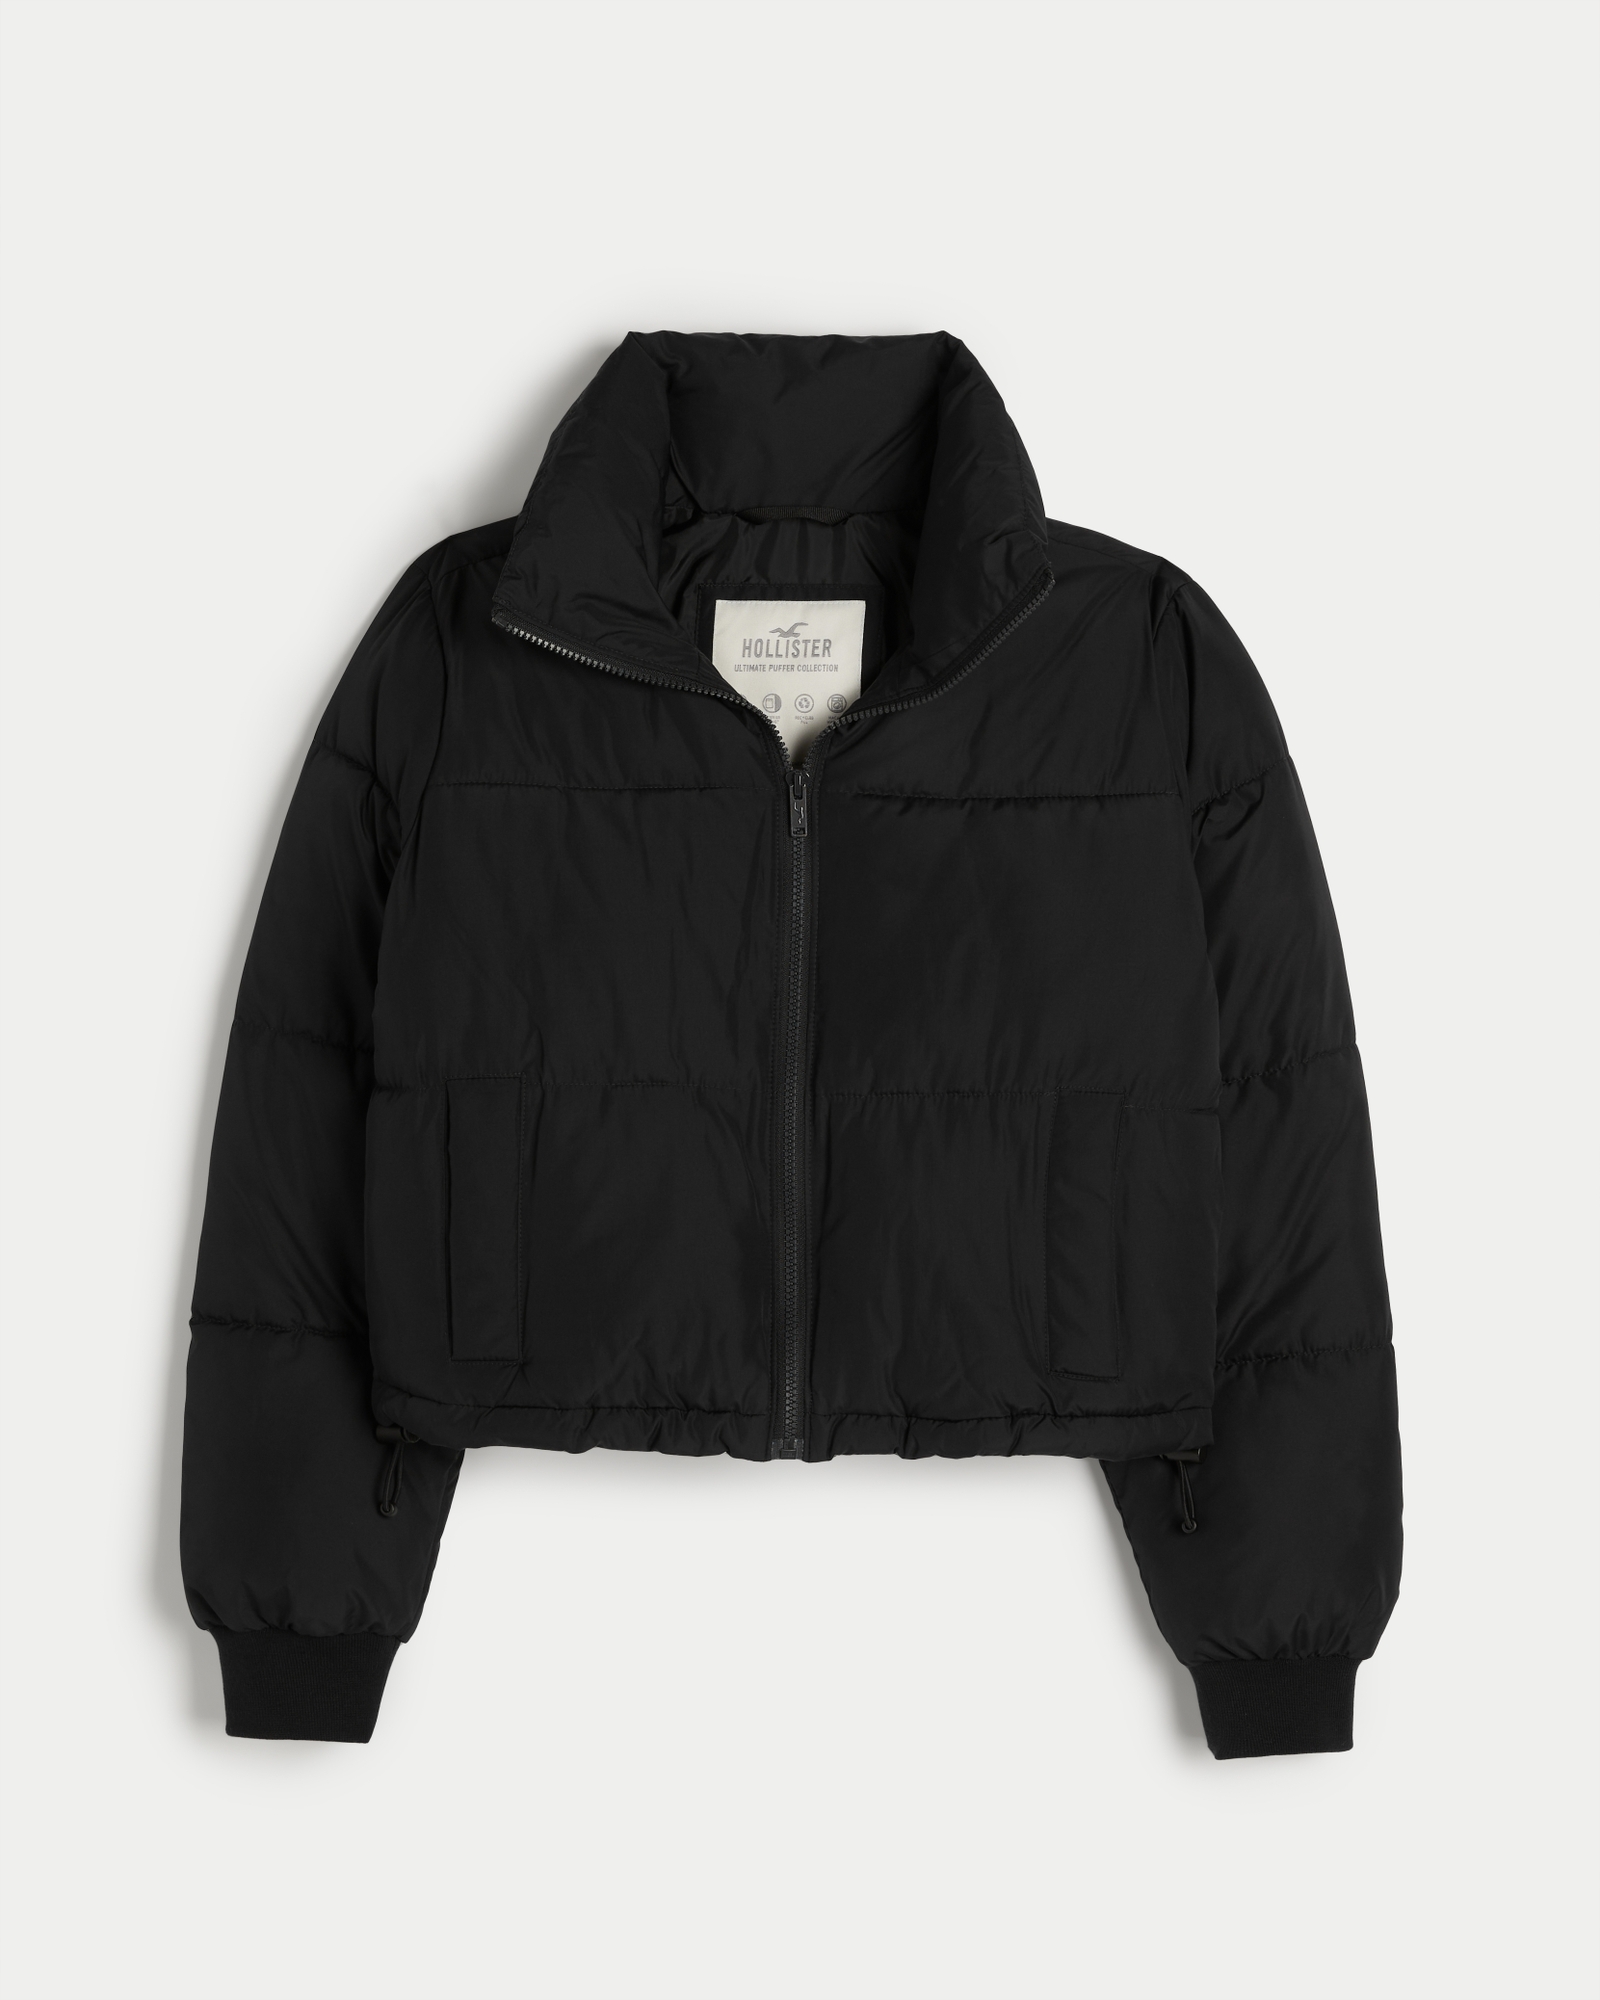 Hollister, Jackets & Coats, Near New Hollister Black Puffer Jacket